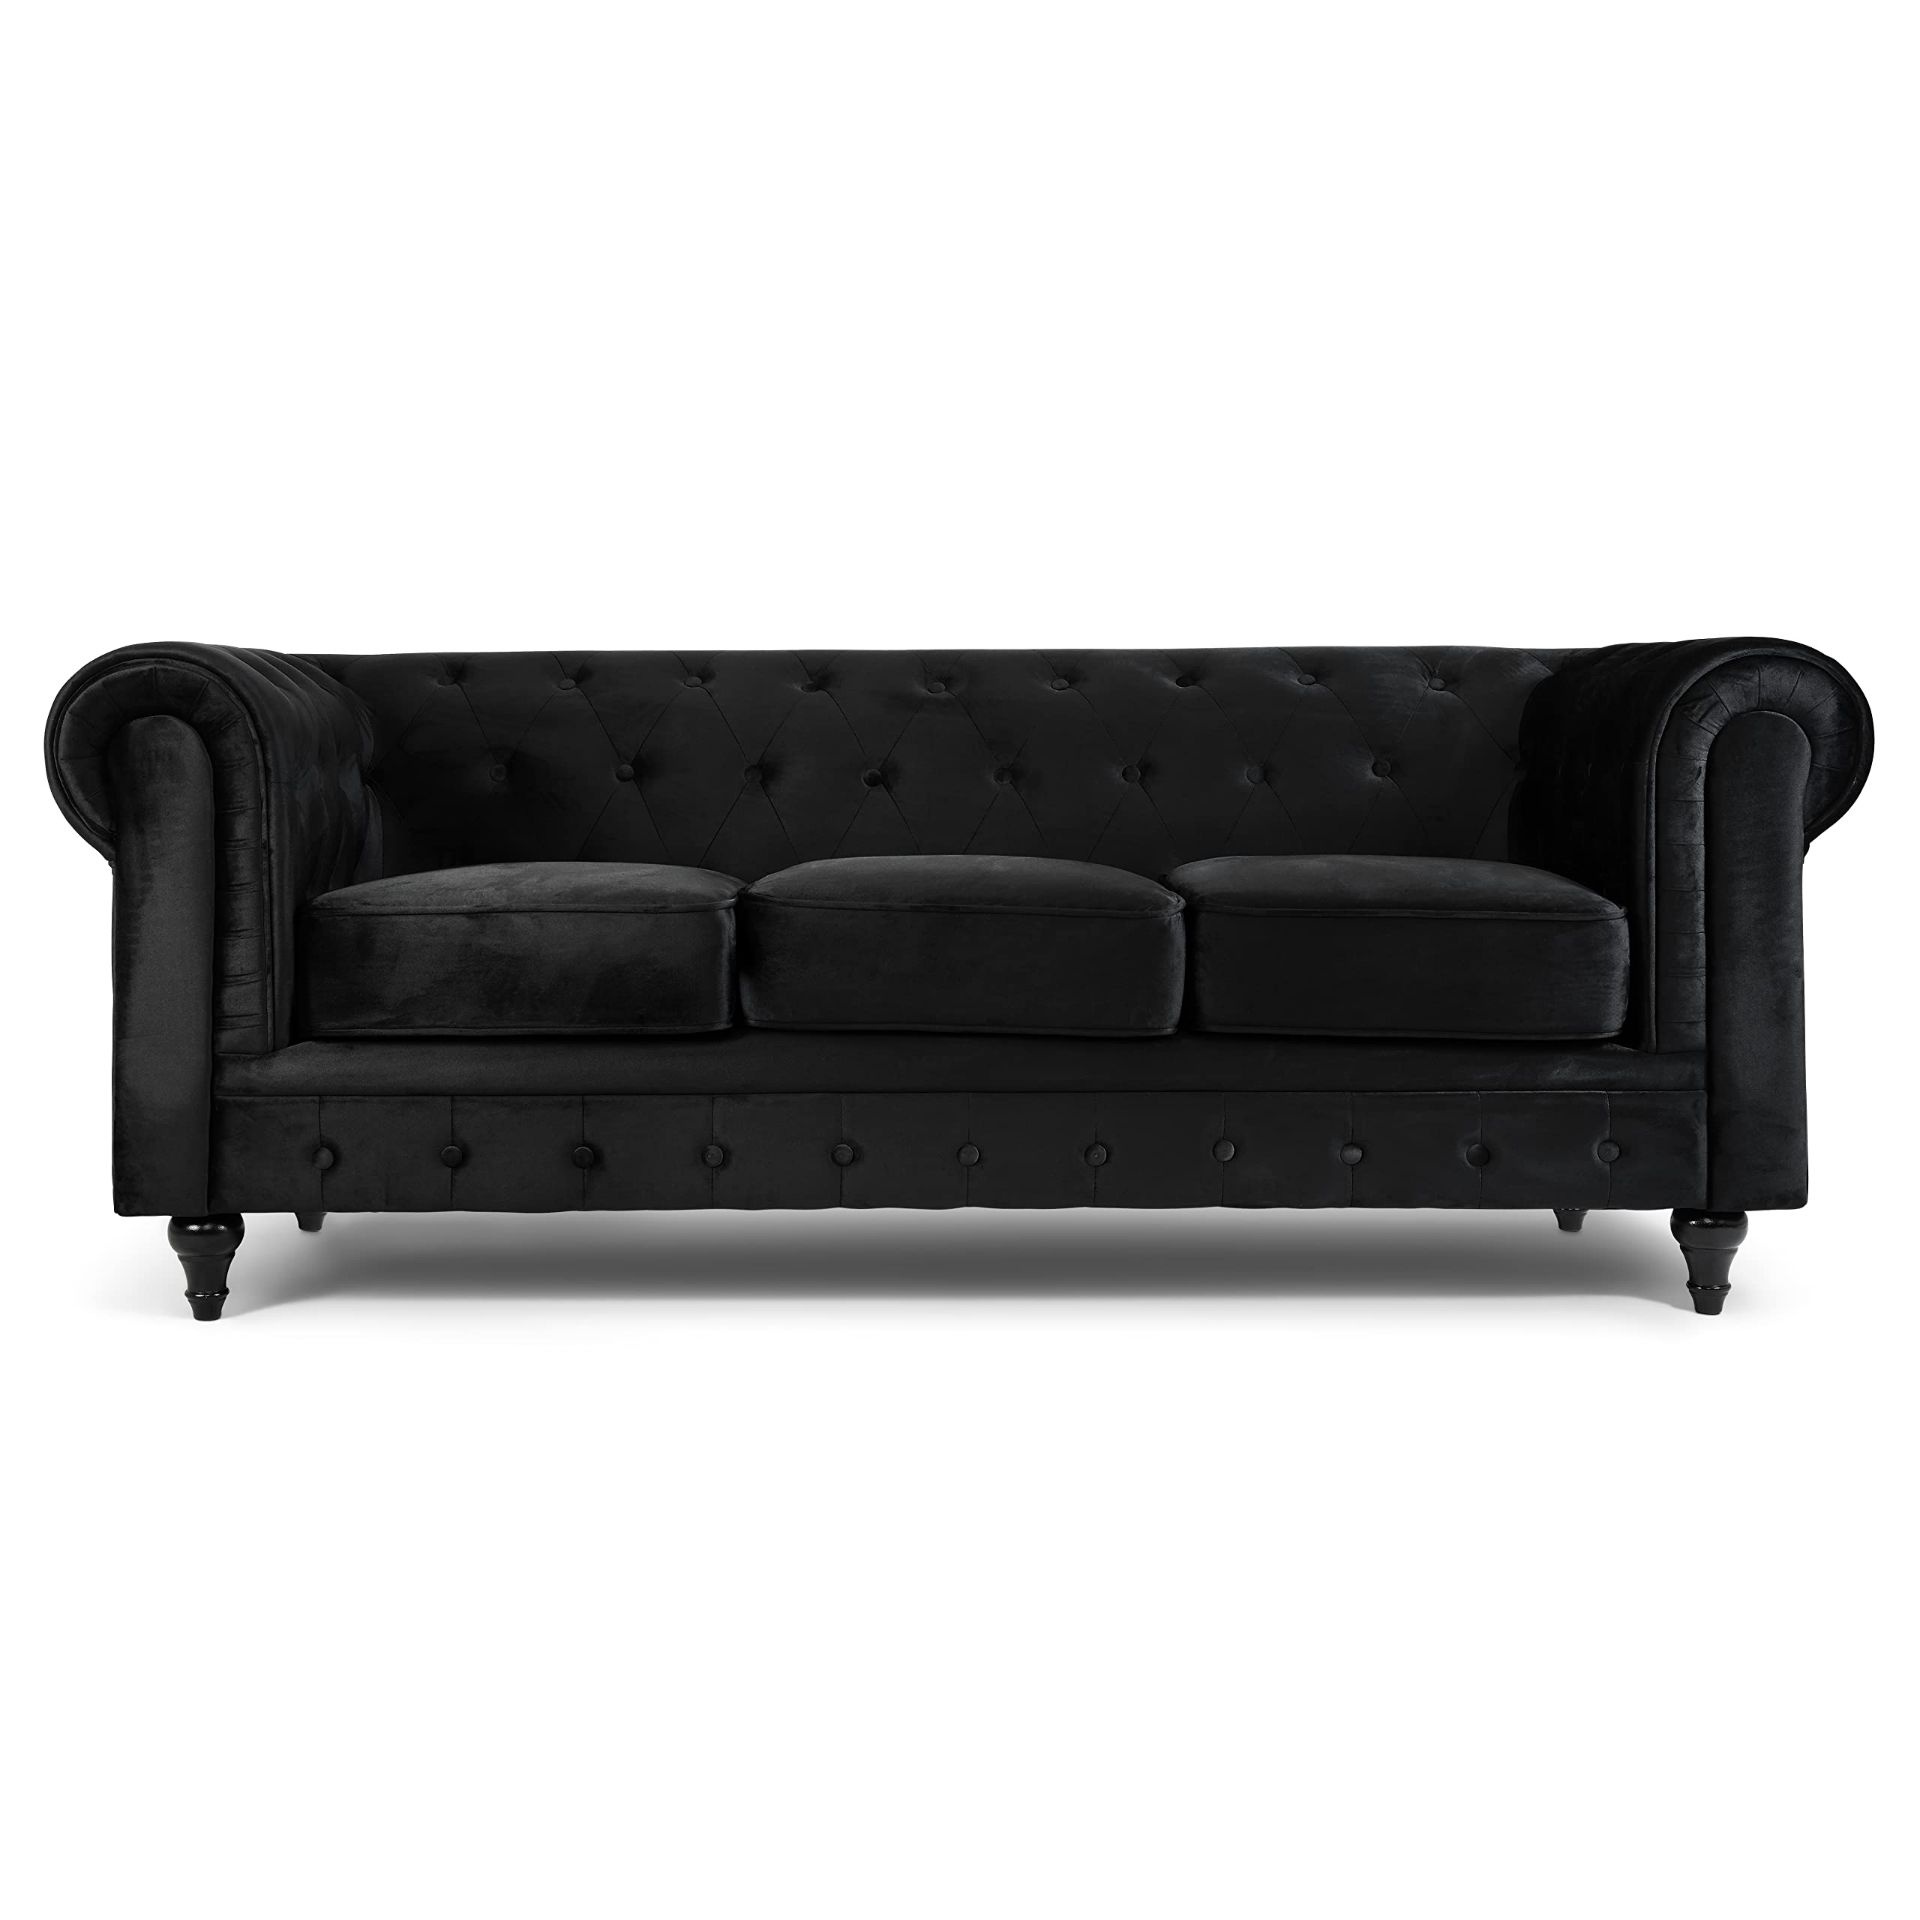 RRP £499.15 Bravich Velvet Chesterfield Sofa- Black. 3 Seater Settee